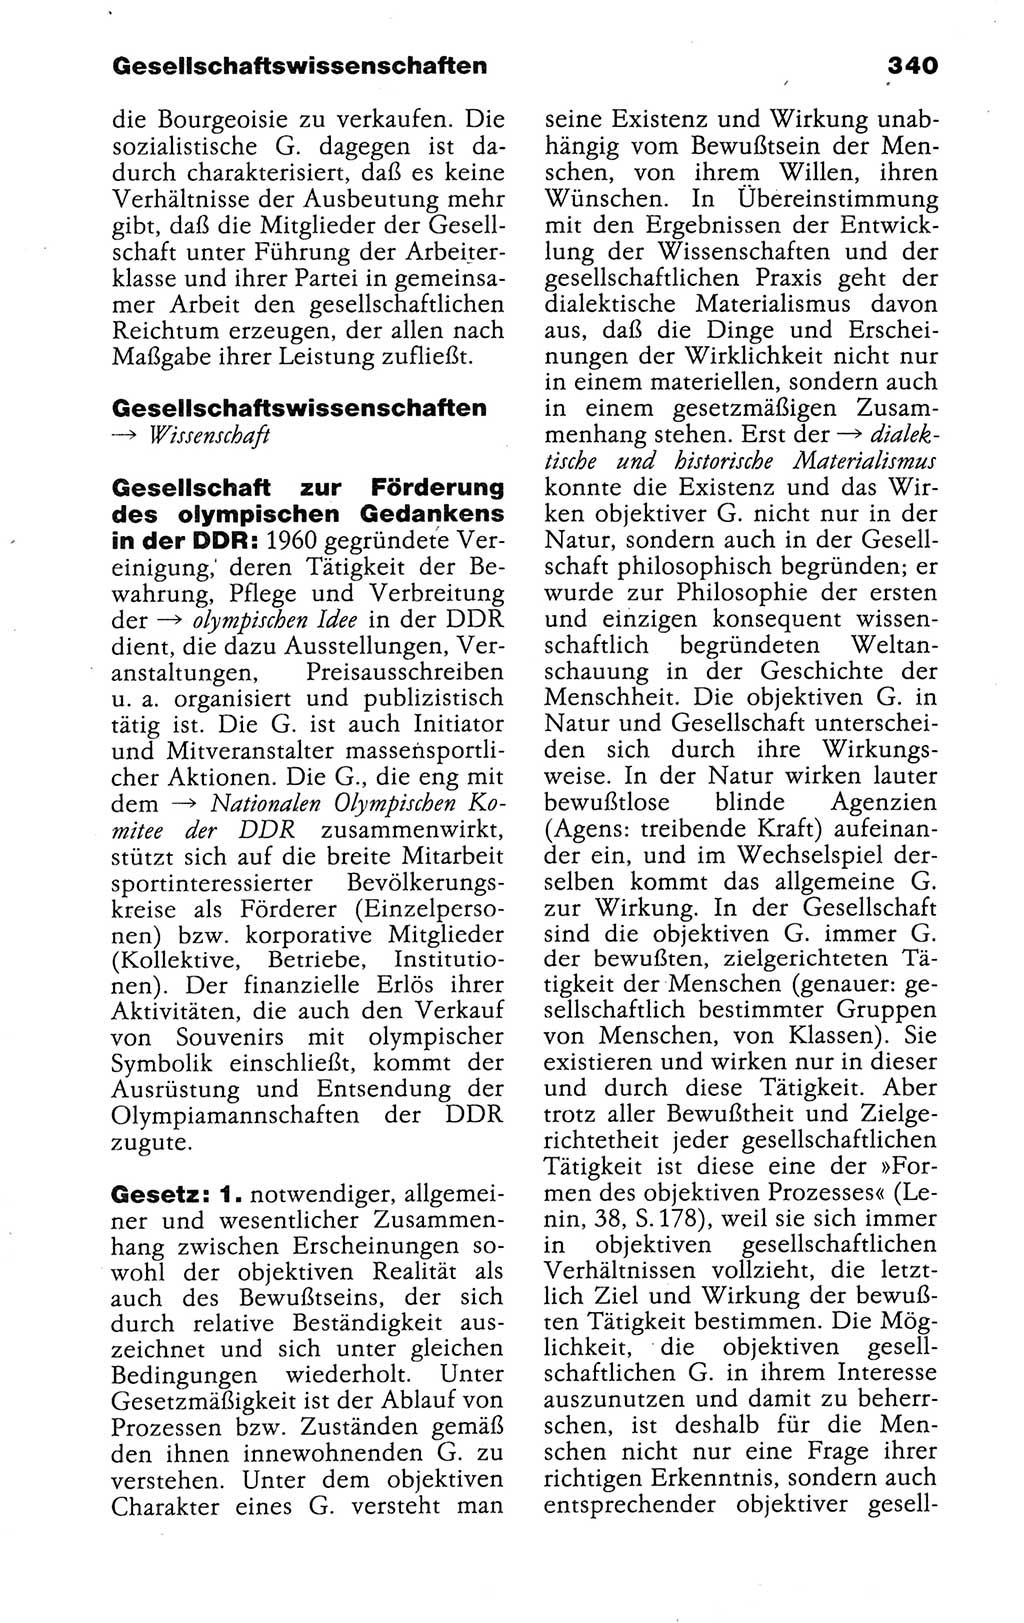 Kleines politisches Wörterbuch [Deutsche Demokratische Republik (DDR)] 1988, Seite 340 (Kl. pol. Wb. DDR 1988, S. 340)